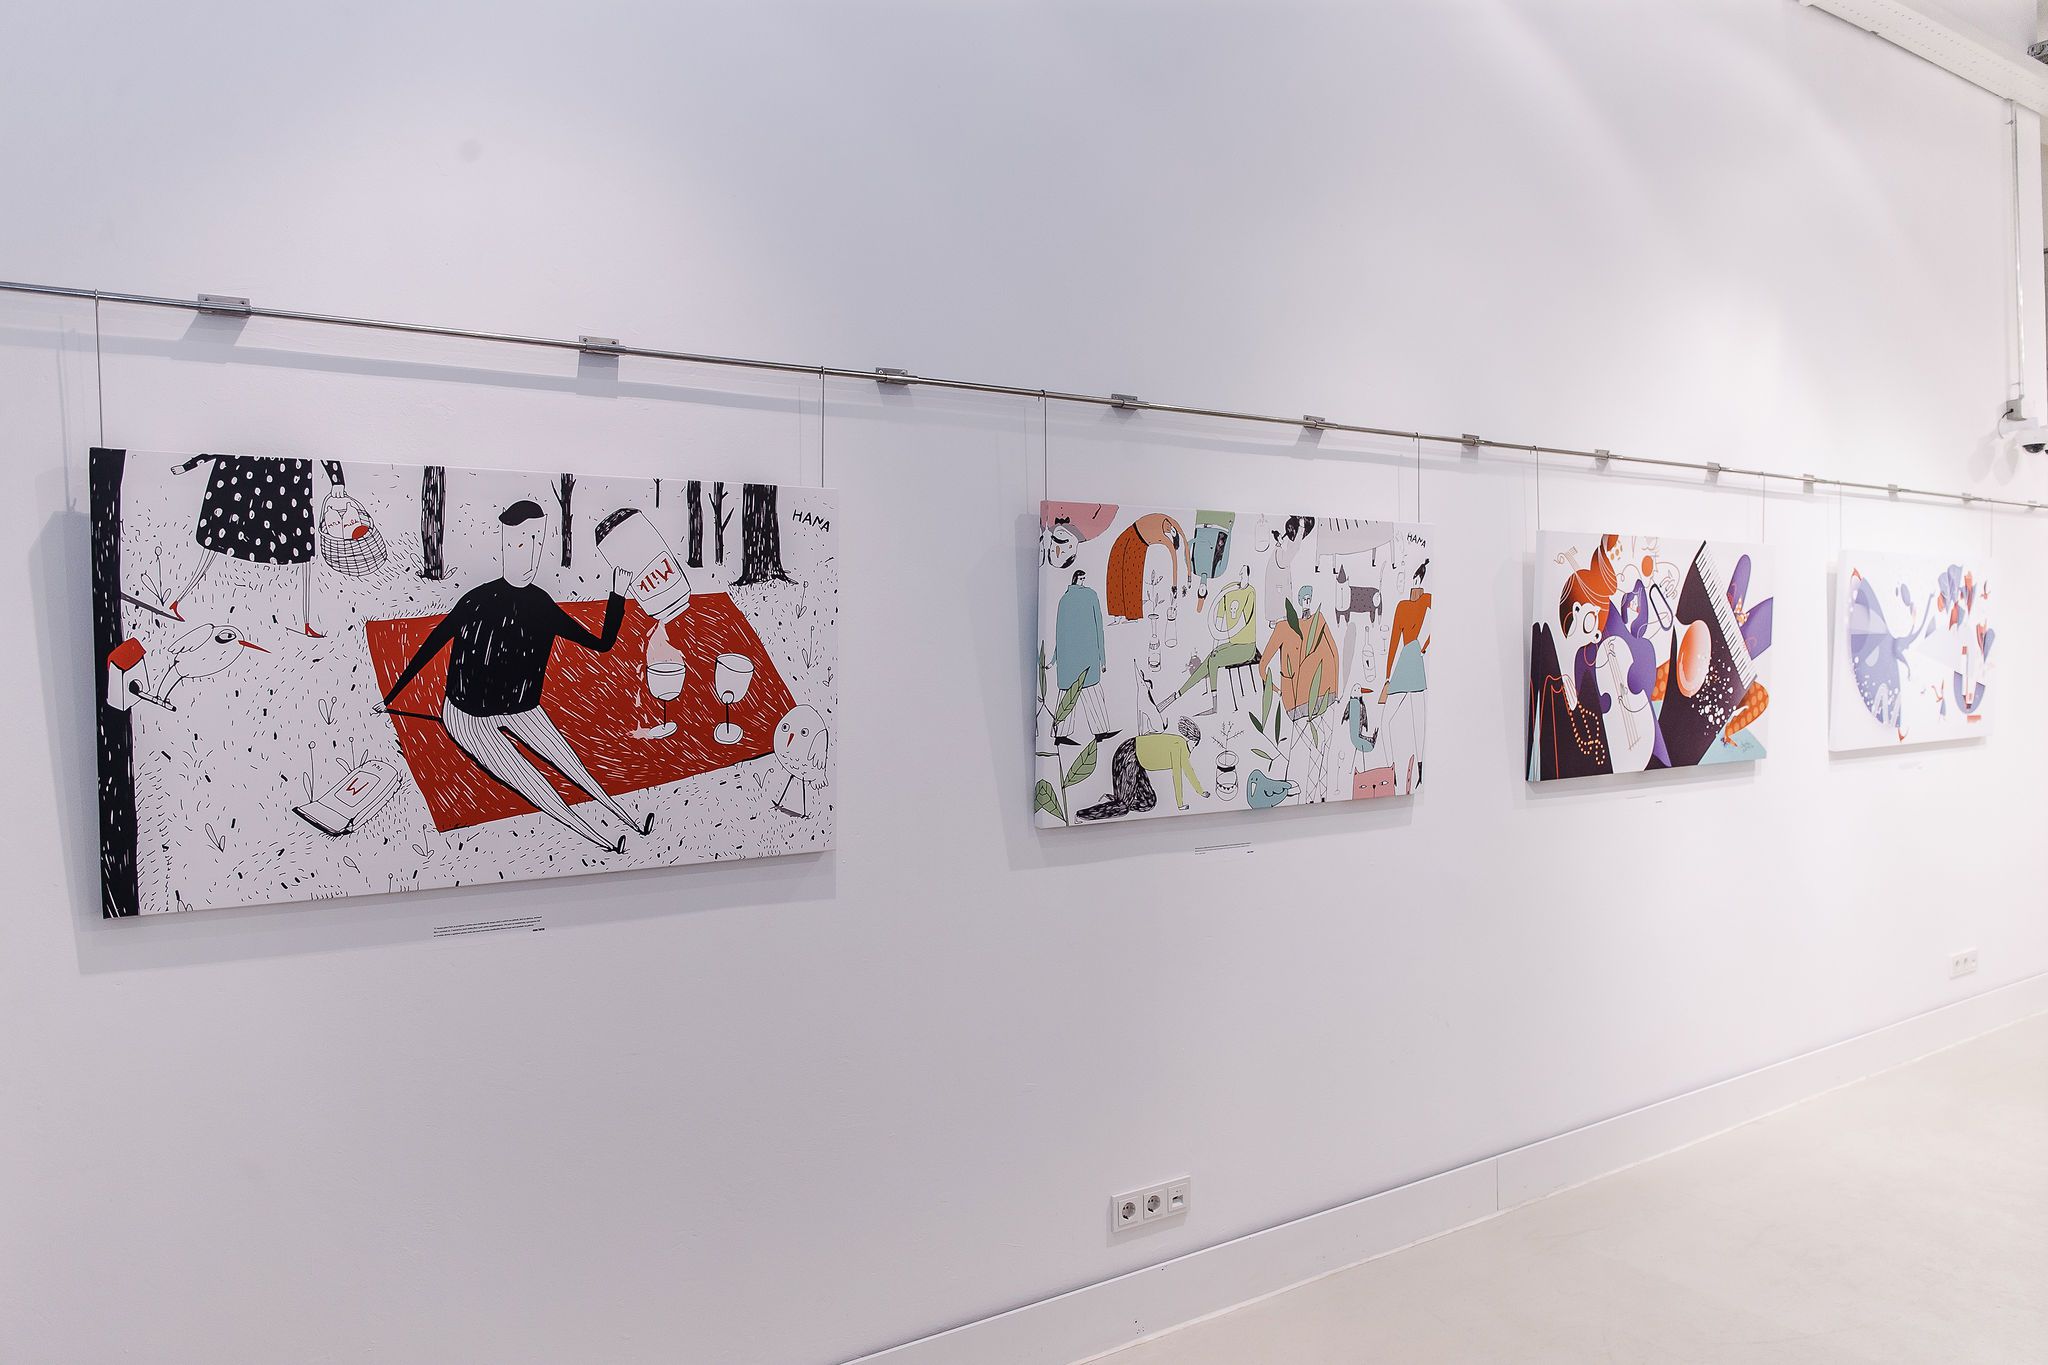 DNA ilustracije šest mladih umjetnika oduševile posjetitelje galerije Oris